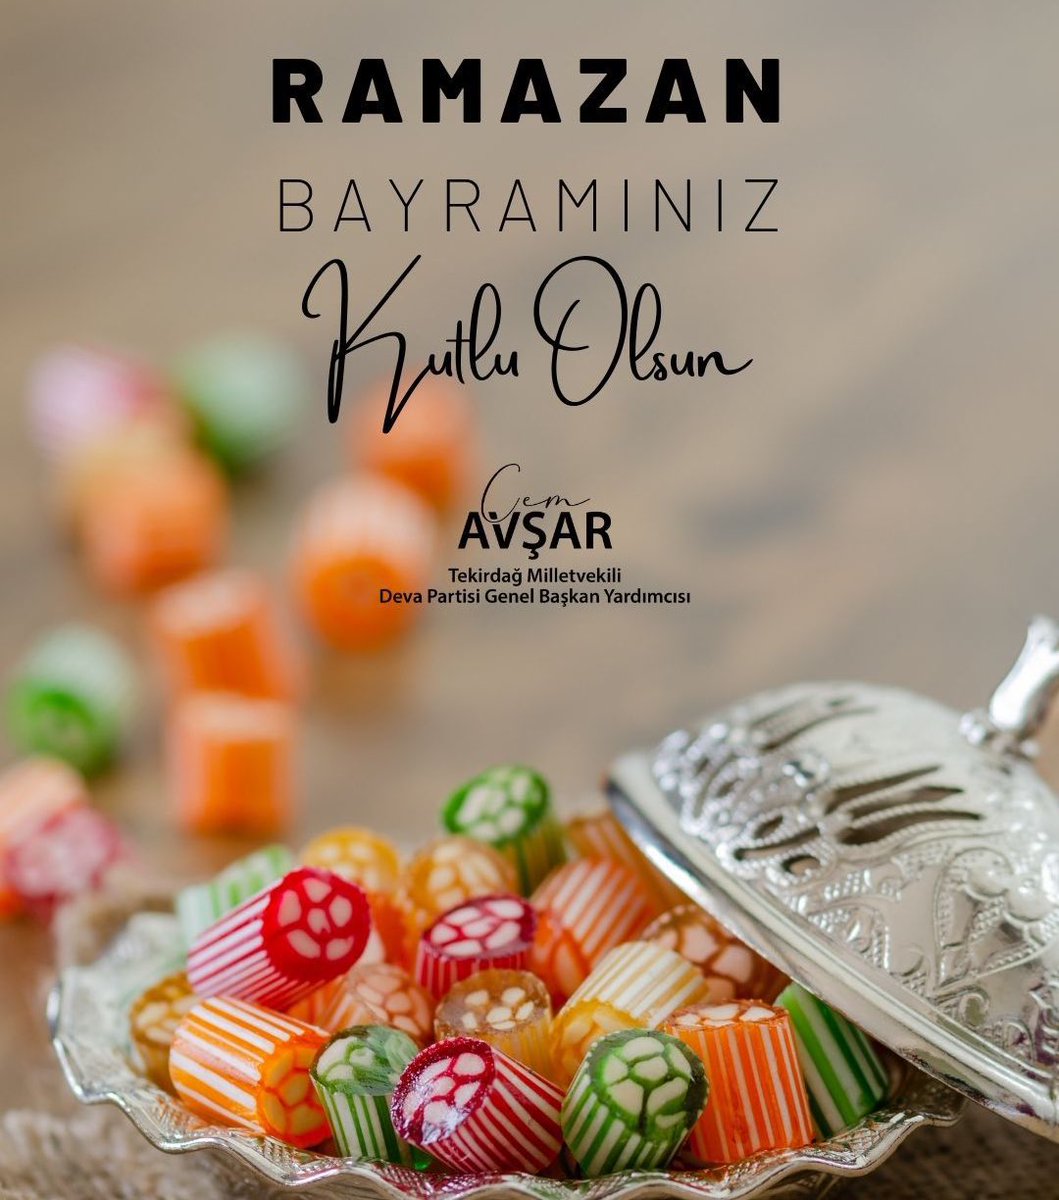 Ekmeği, sevgiyi, kardeşliği paylaşarak çoğalttığımız, barış ve hoşgörüyü en sıcak şekilde hissedeceğimiz nice bayramlar dilerim.  #RamazanBayramı